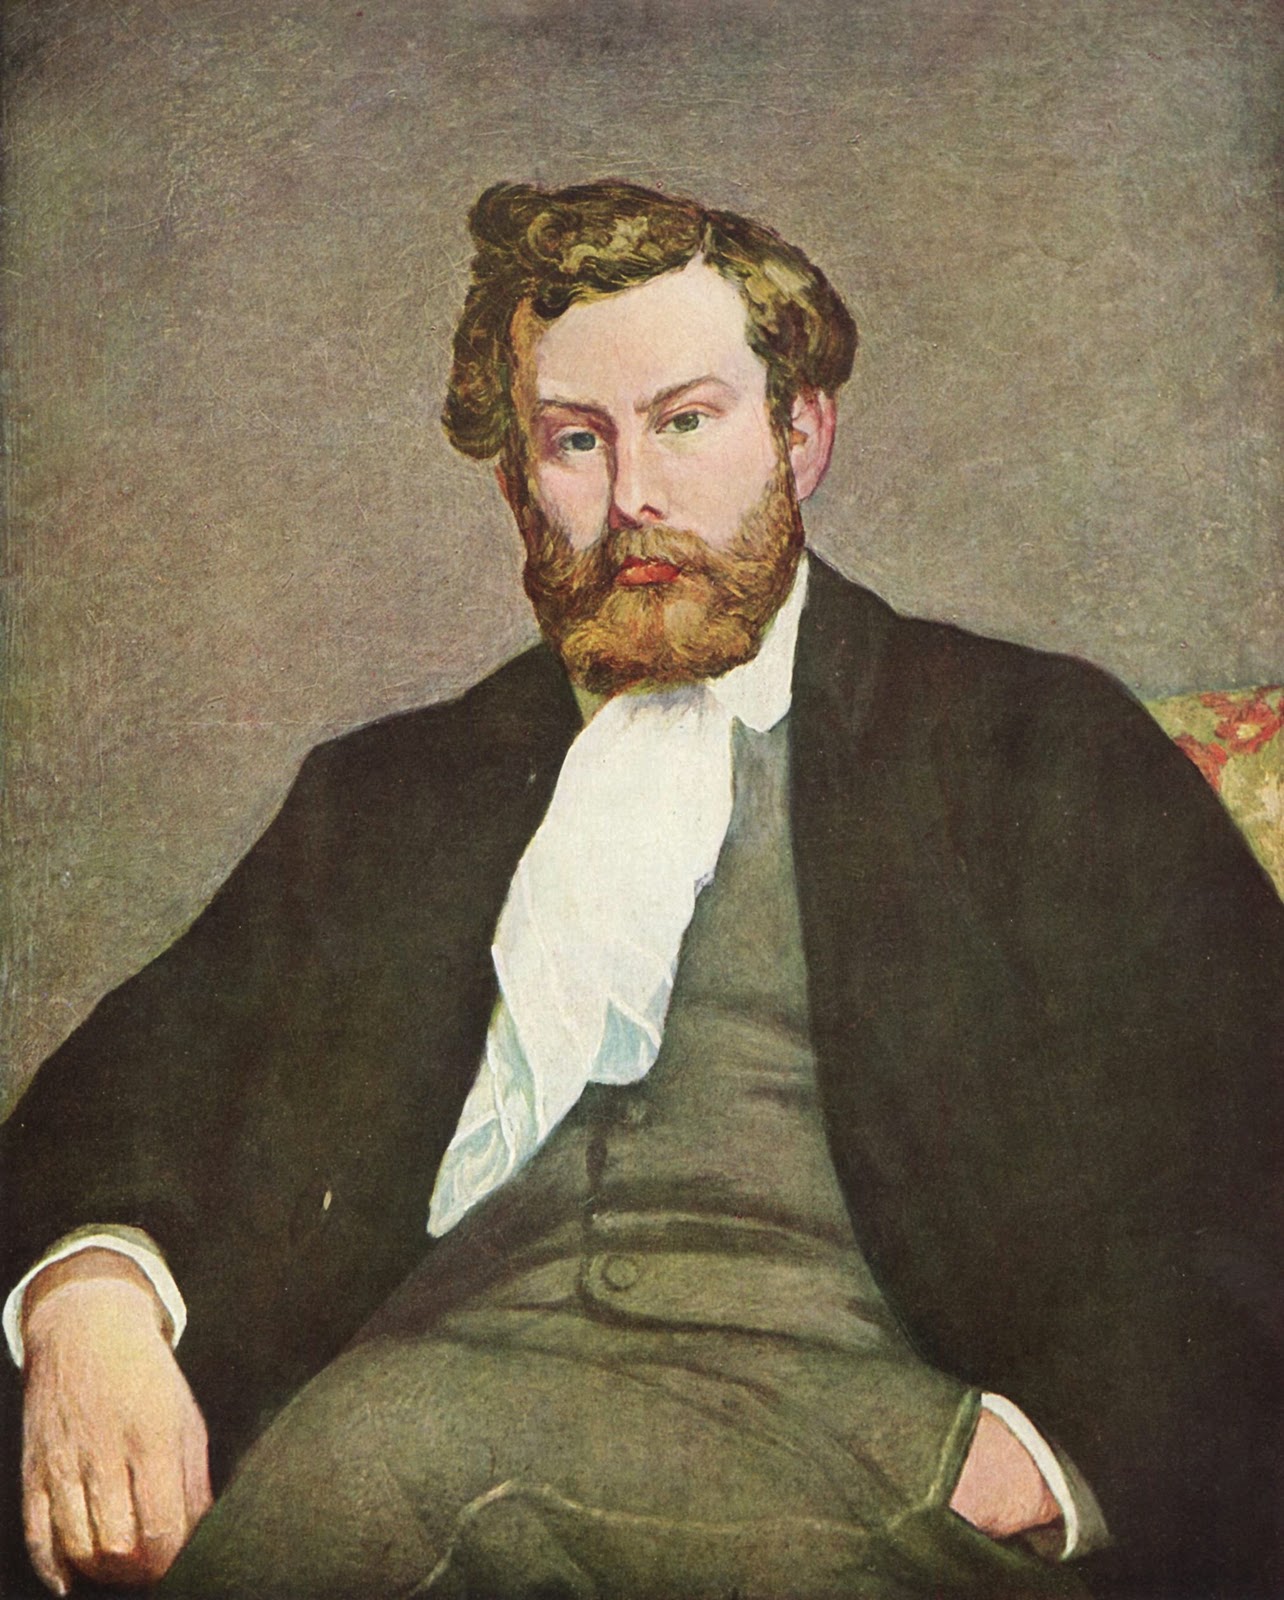 Pierre+Auguste+Renoir-1841-1-19 (931).jpg